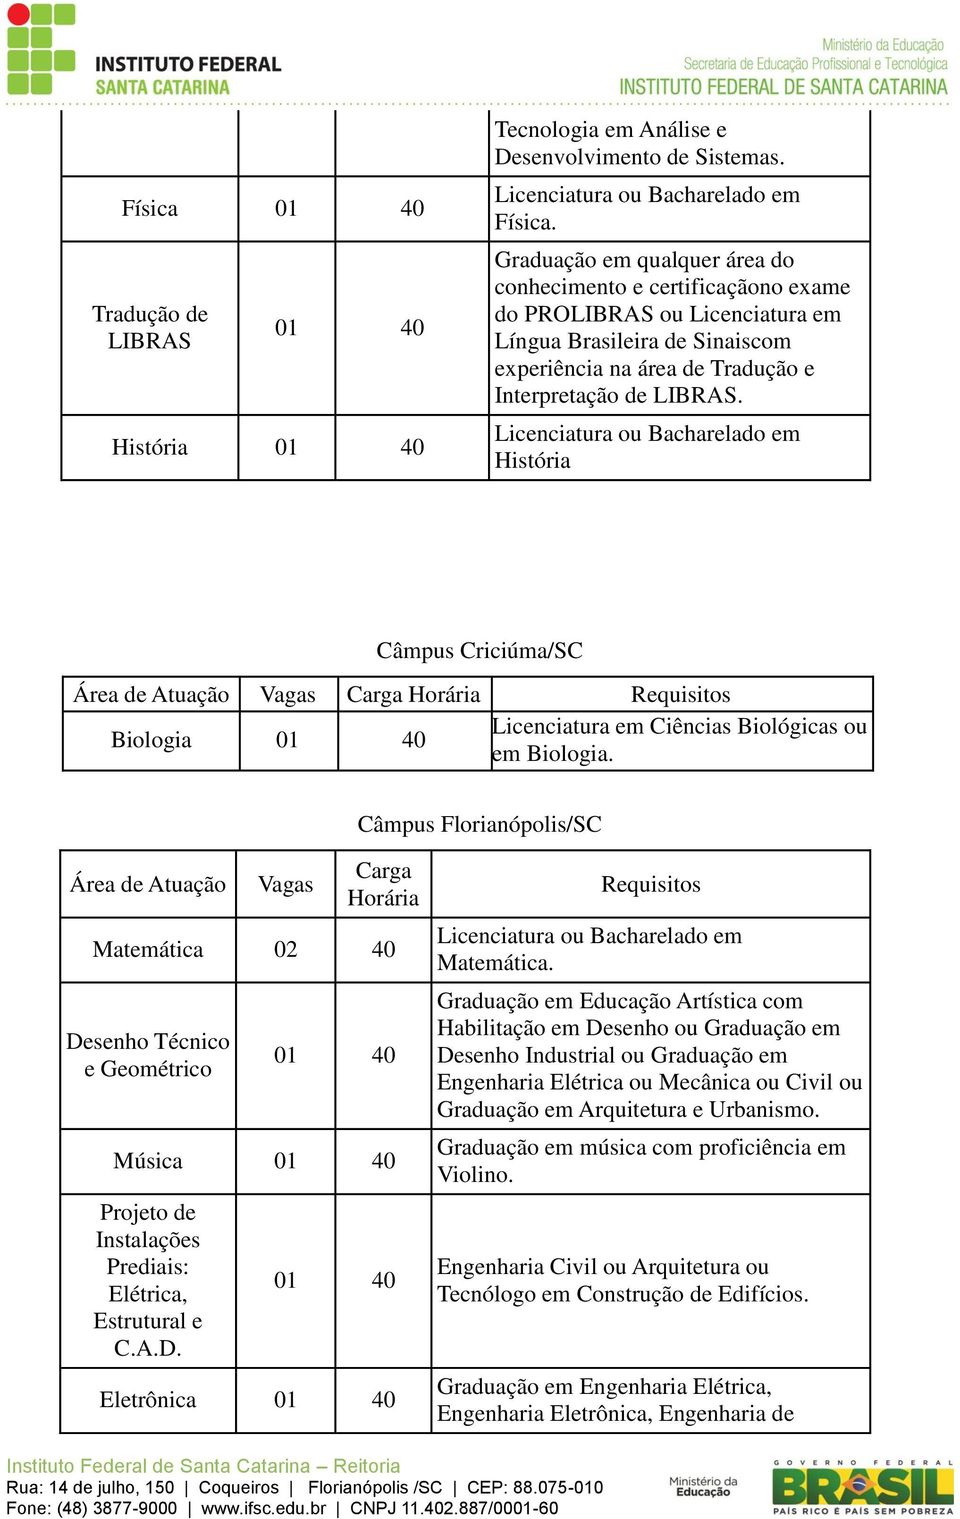 Licenciatura ou Bacharelado em História Câmpus Criciúma/SC Biologia Licenciatura em Ciências Biológicas ou em Biologia.